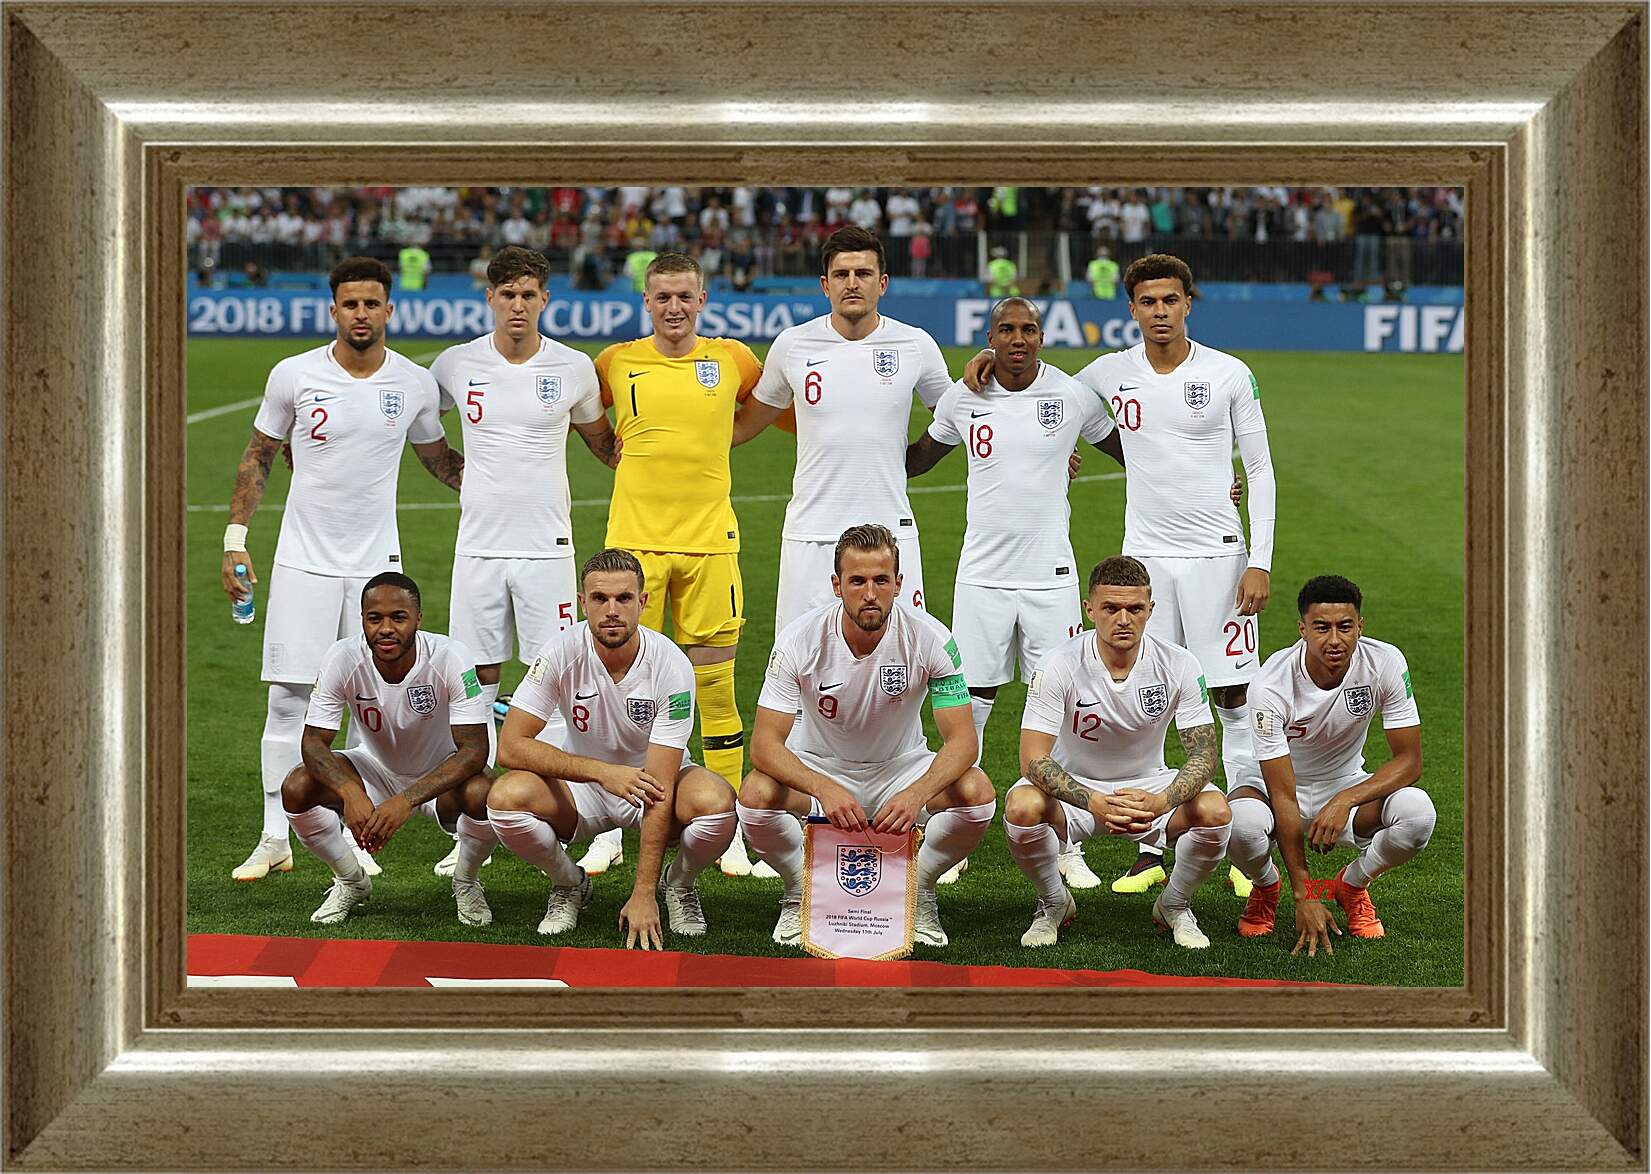 Картина в раме - Фото перед матчем сборной Англии по футболу